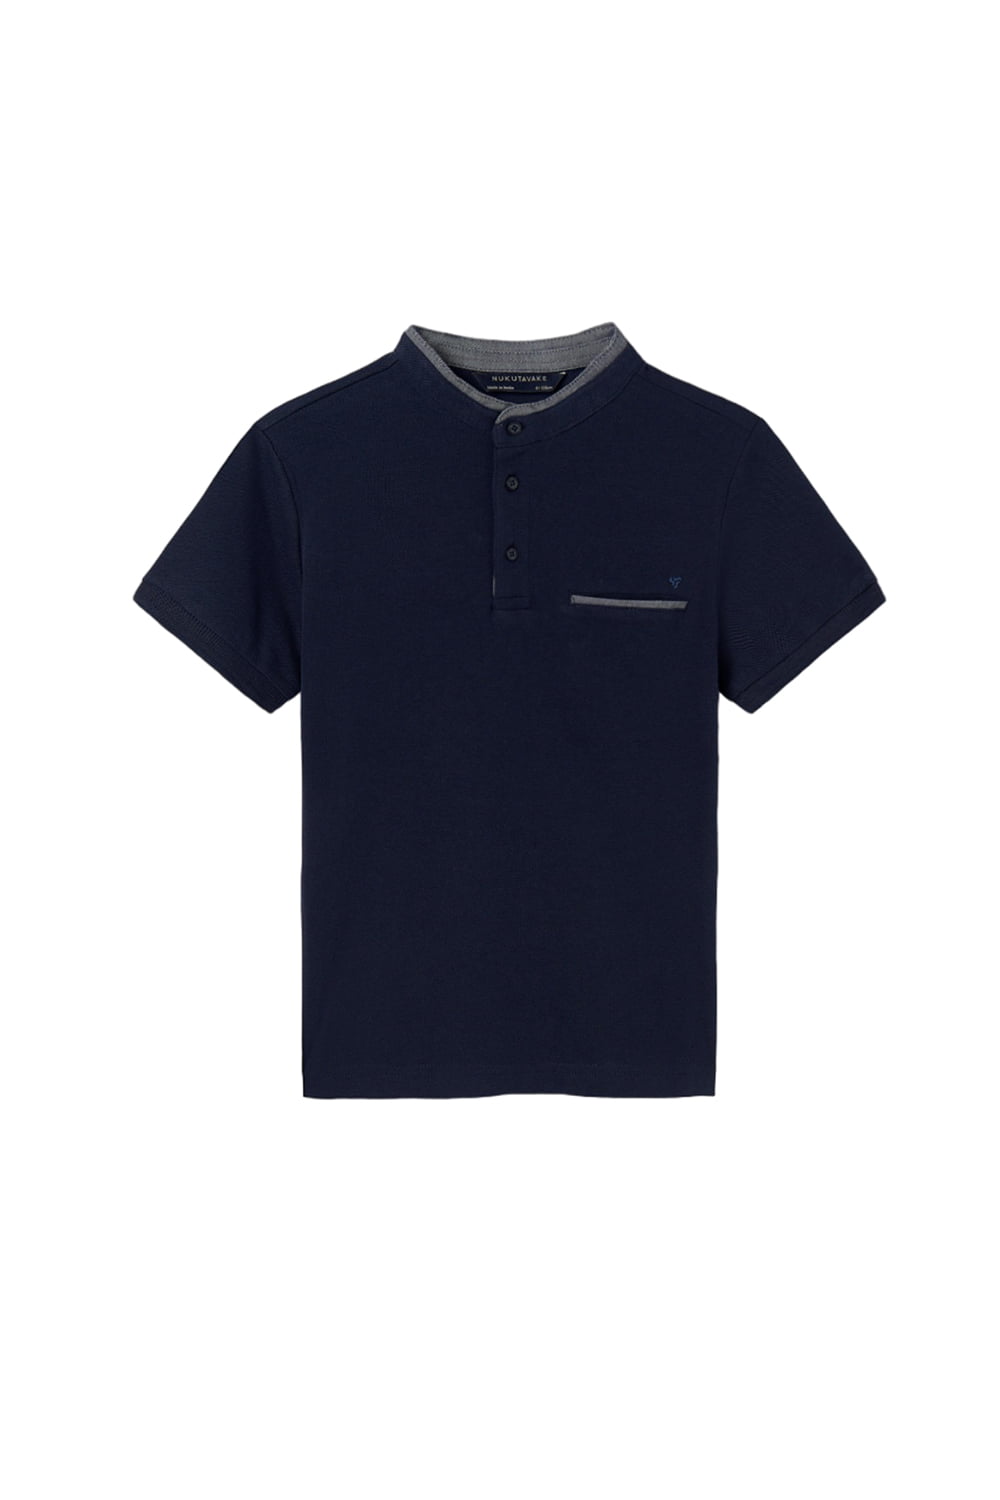 Παιδική Μπλούζα Για Αγόρι MAYORAL 24-06108-079 Navy